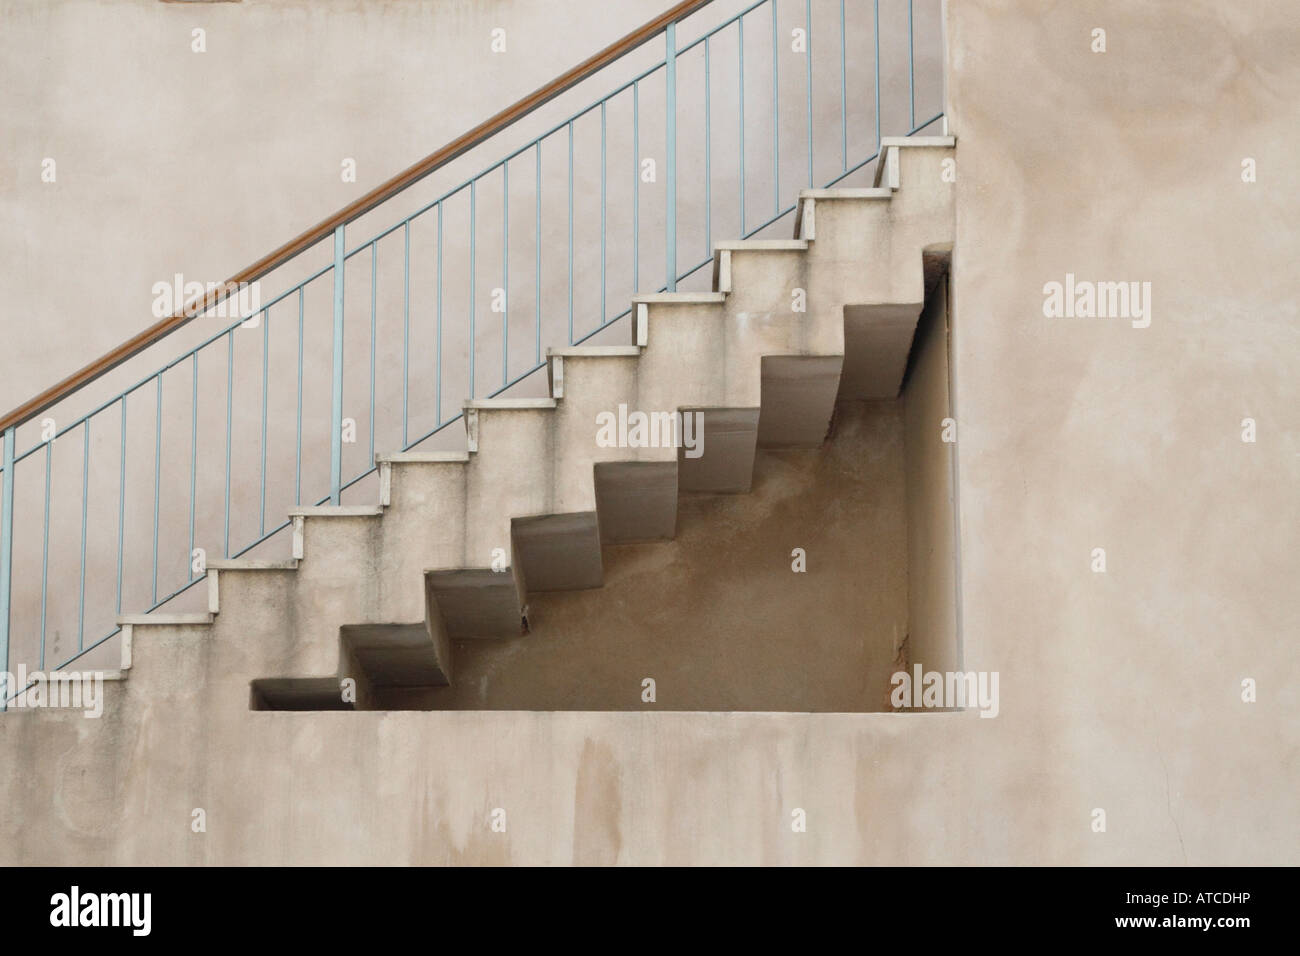 Bâtiment du Bauhaus à Tel Aviv Israël 2007 l'escalier et la rampe créer différentes formes géométriques Banque D'Images